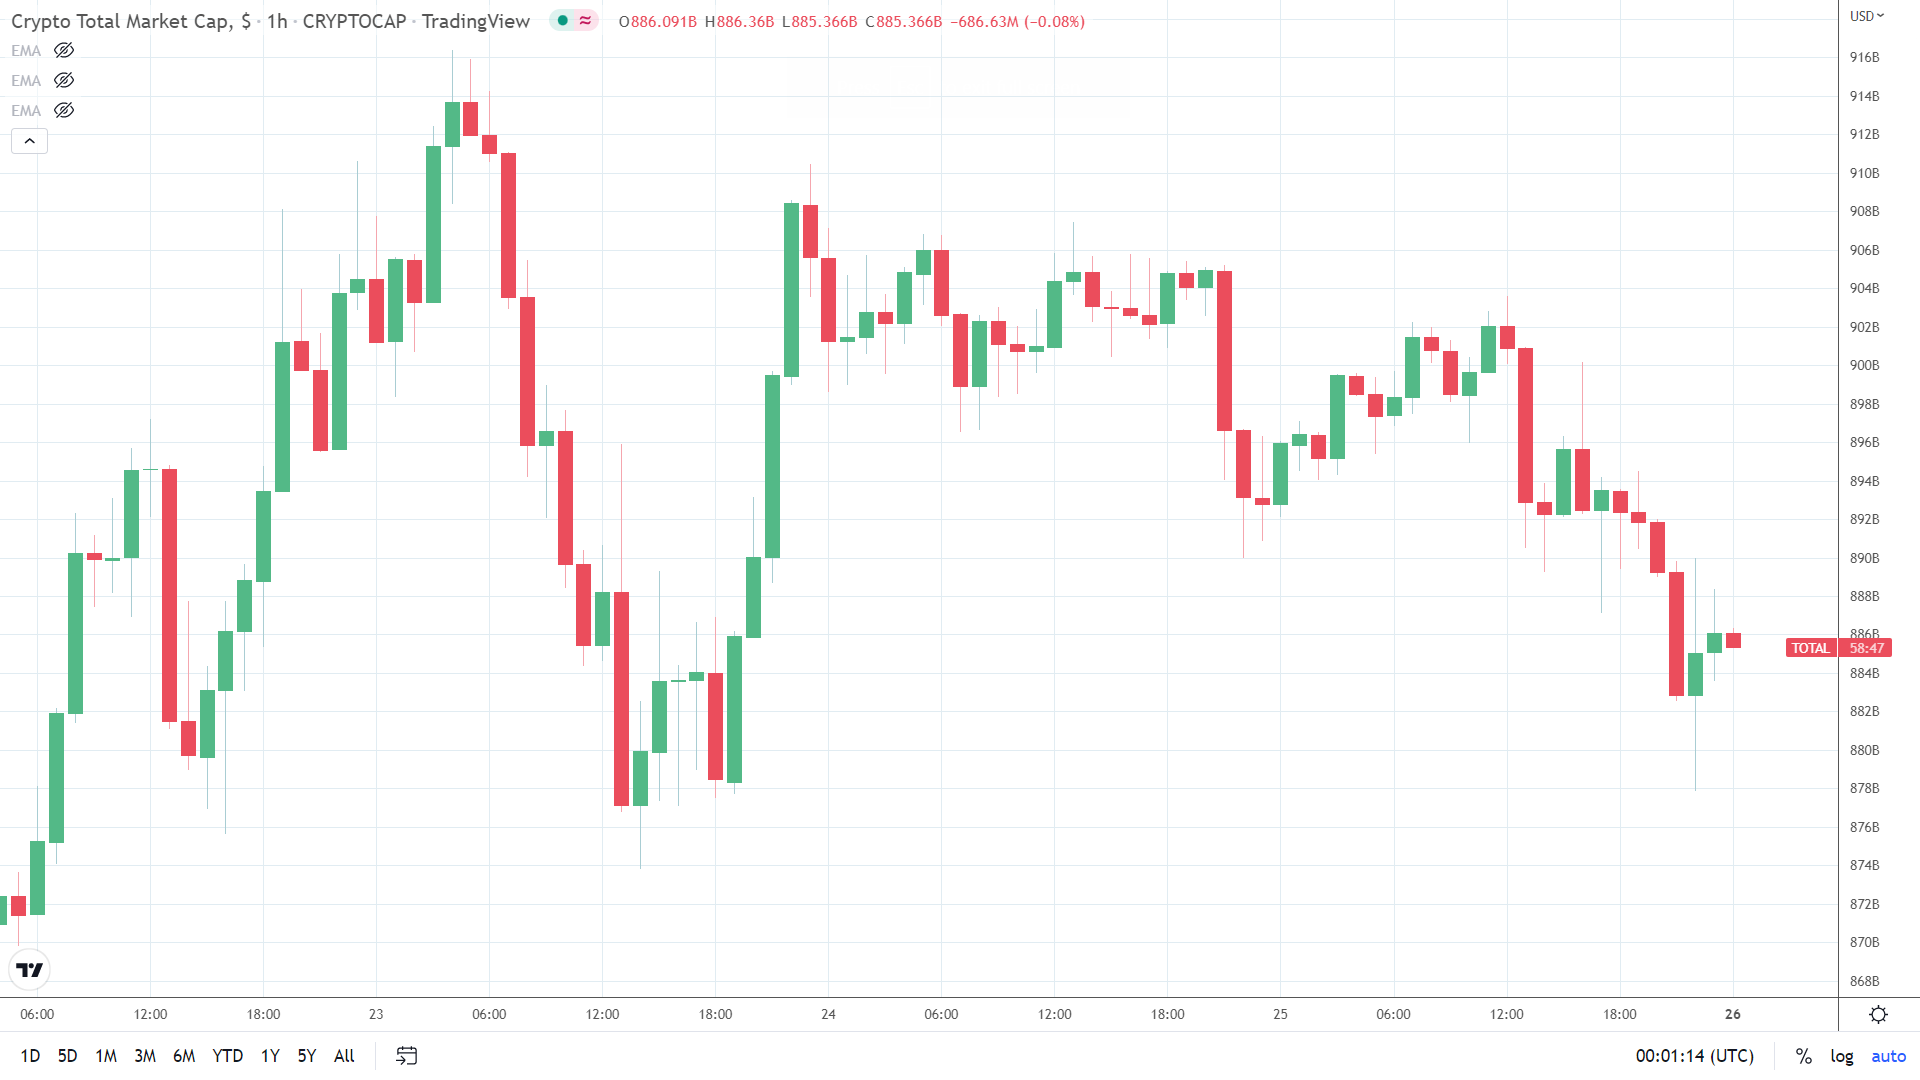 Hourly crypto market cap chart